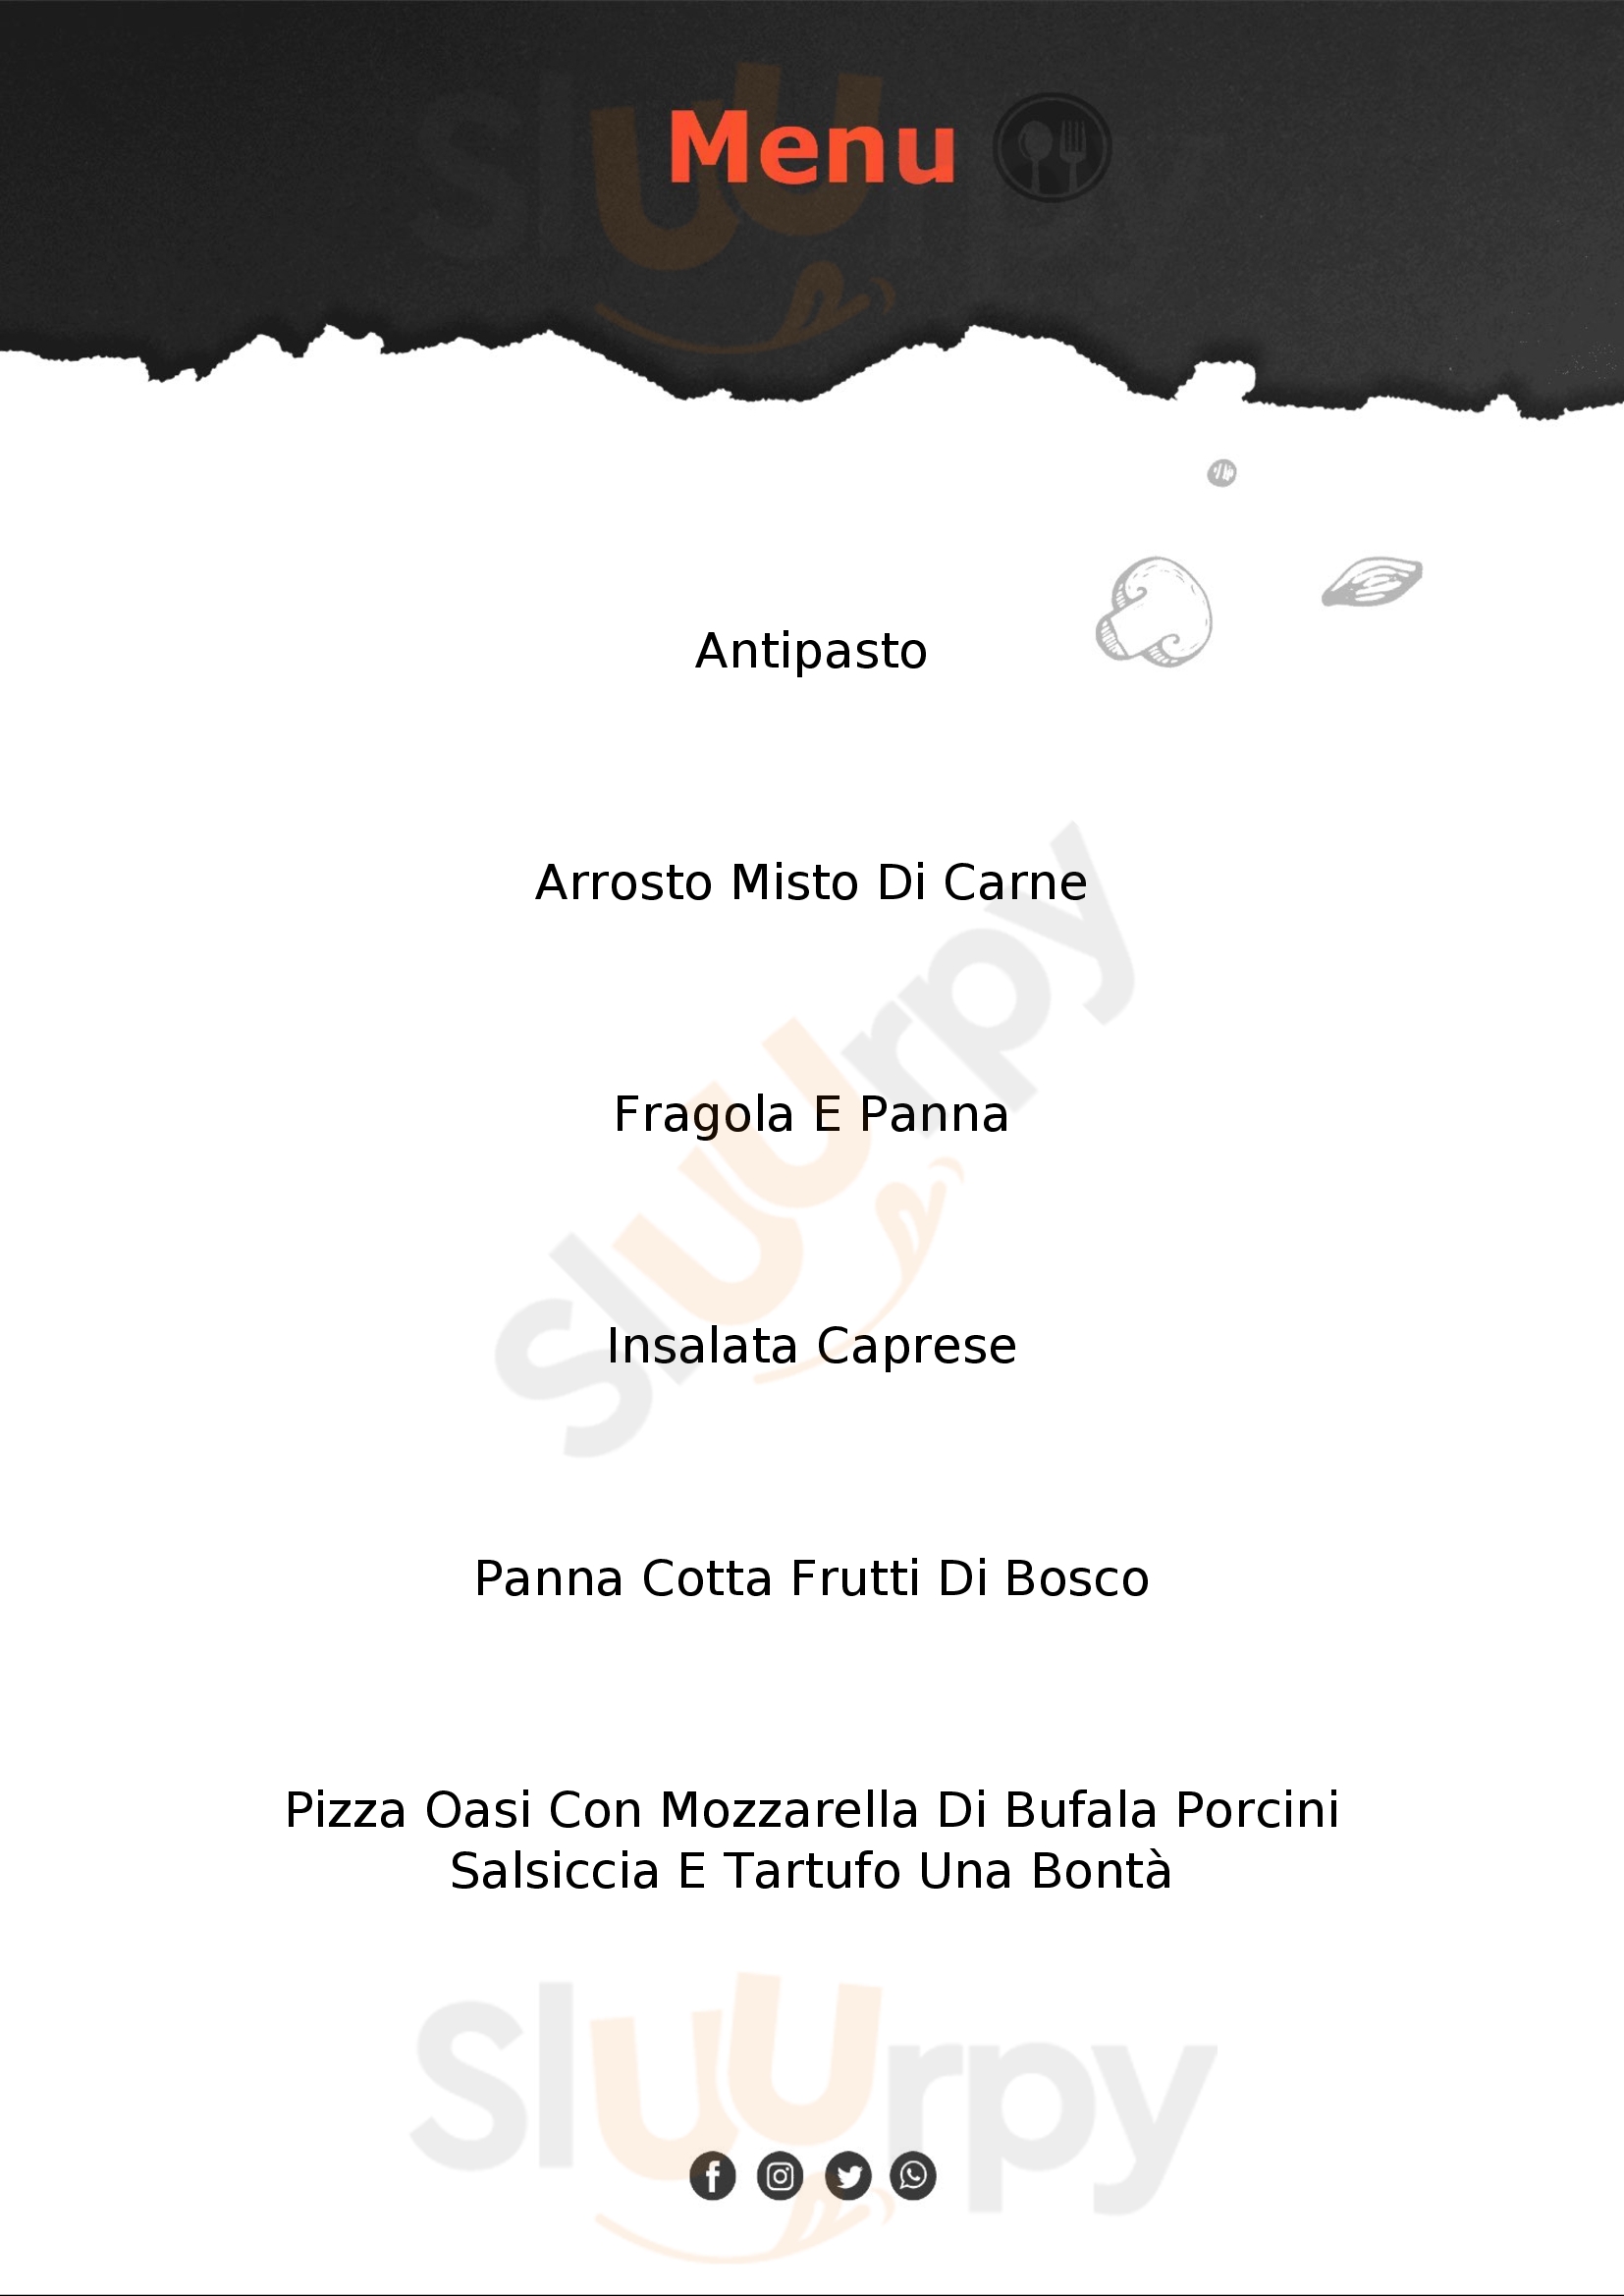 Ristorante Pizzeria Raggio D'Oro San Giuliano del Sannio menù 1 pagina